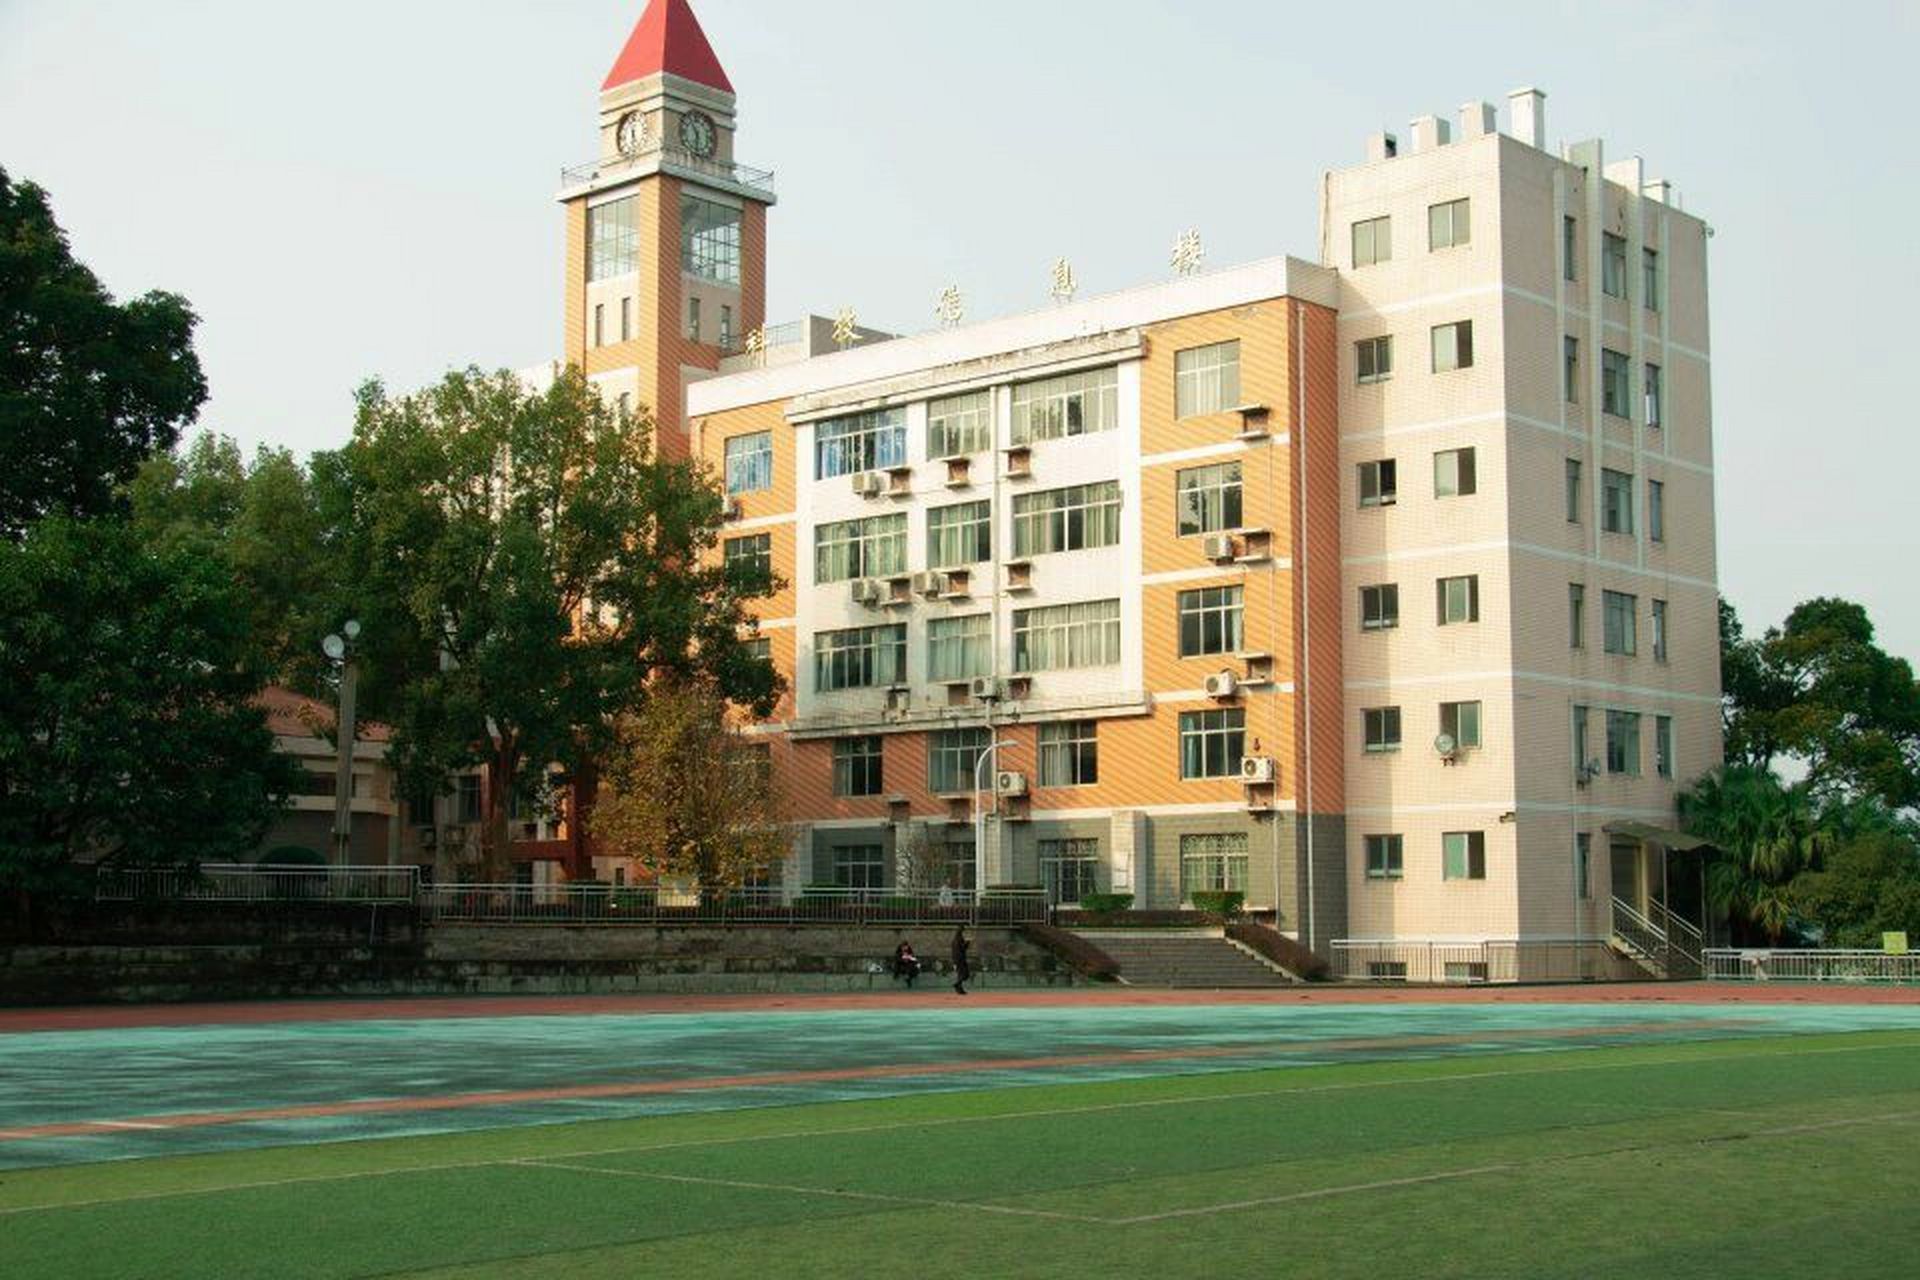 重庆航天技术学院图片